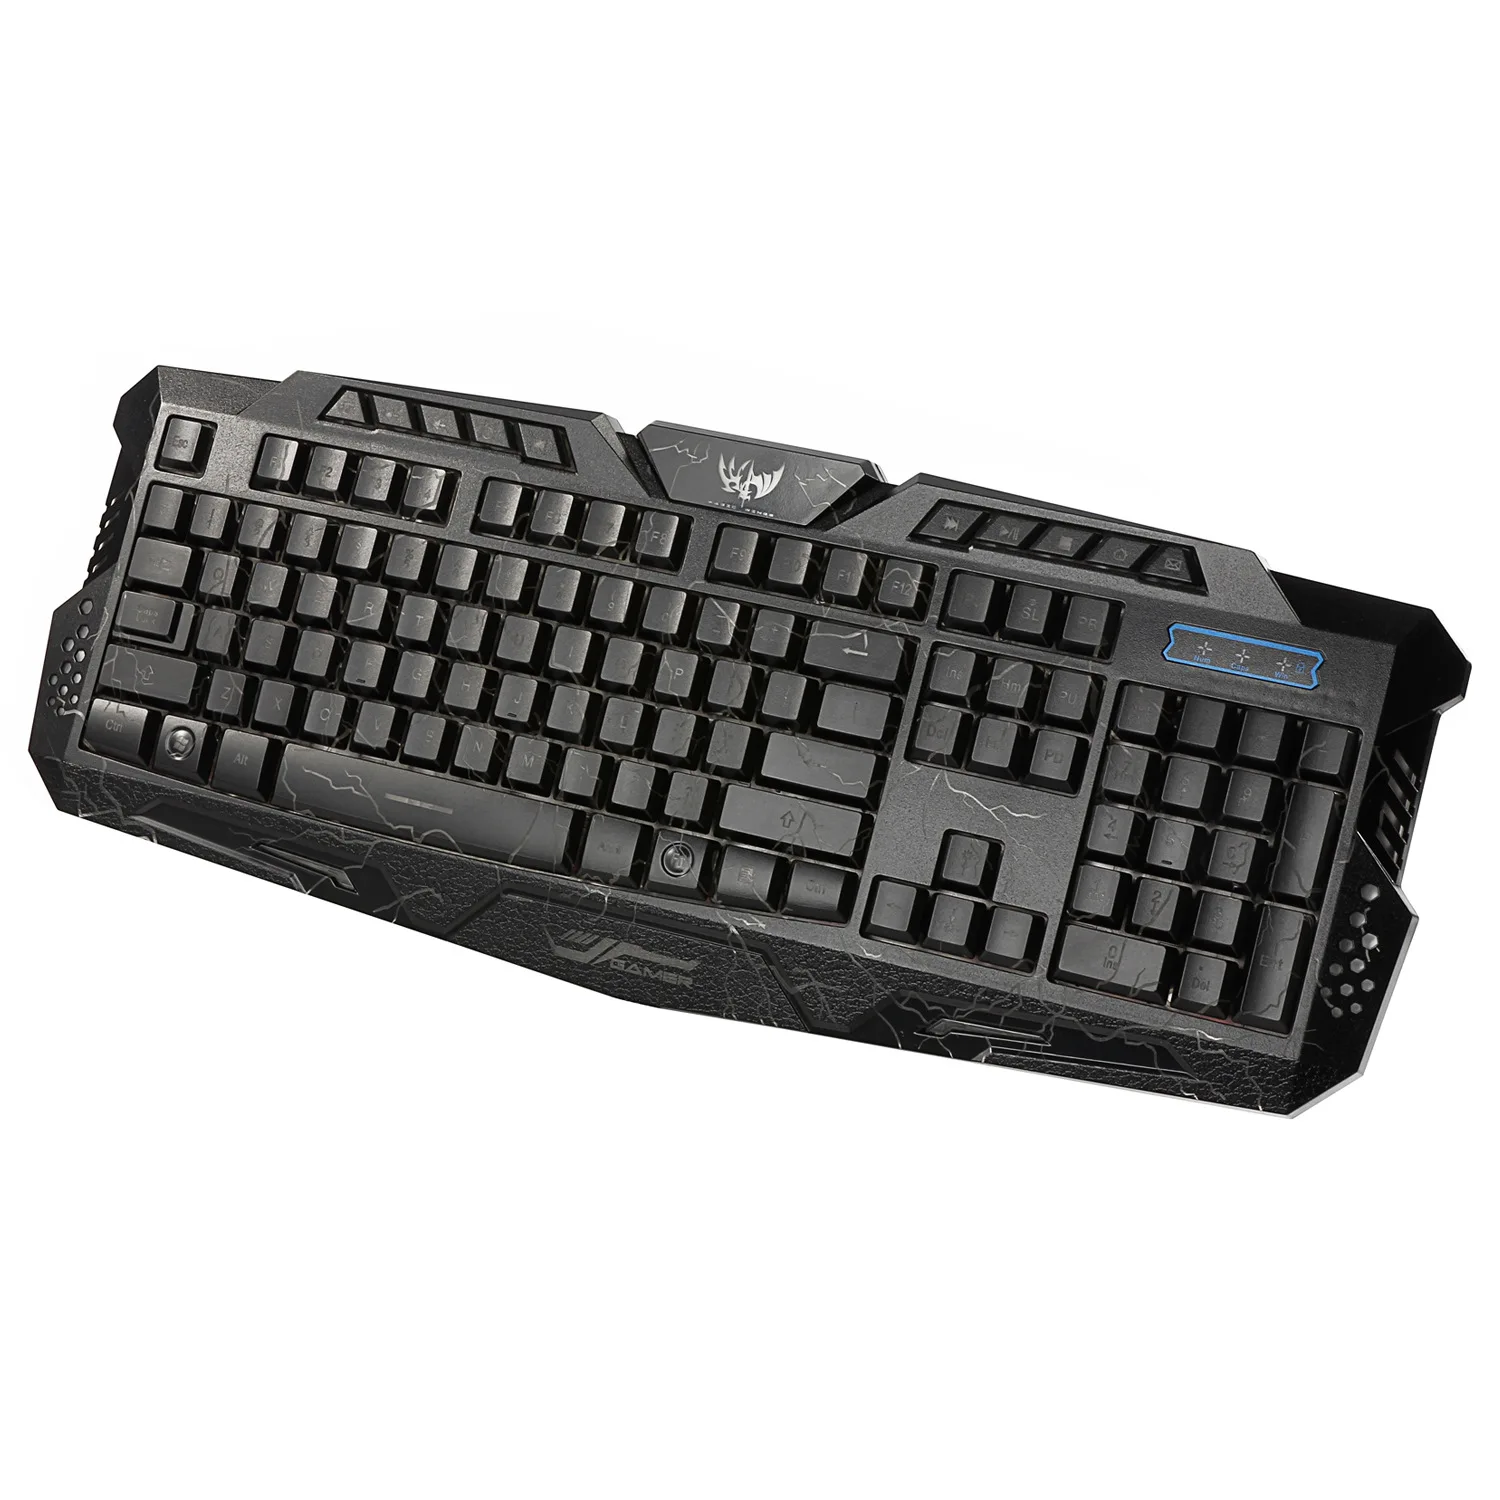 Rii Mini teclado inalámbrico, teclado inalámbrico F8 2.4G con panel táctil,  mouse combinado, aprendizaje por infrarrojos, controlador de teclado